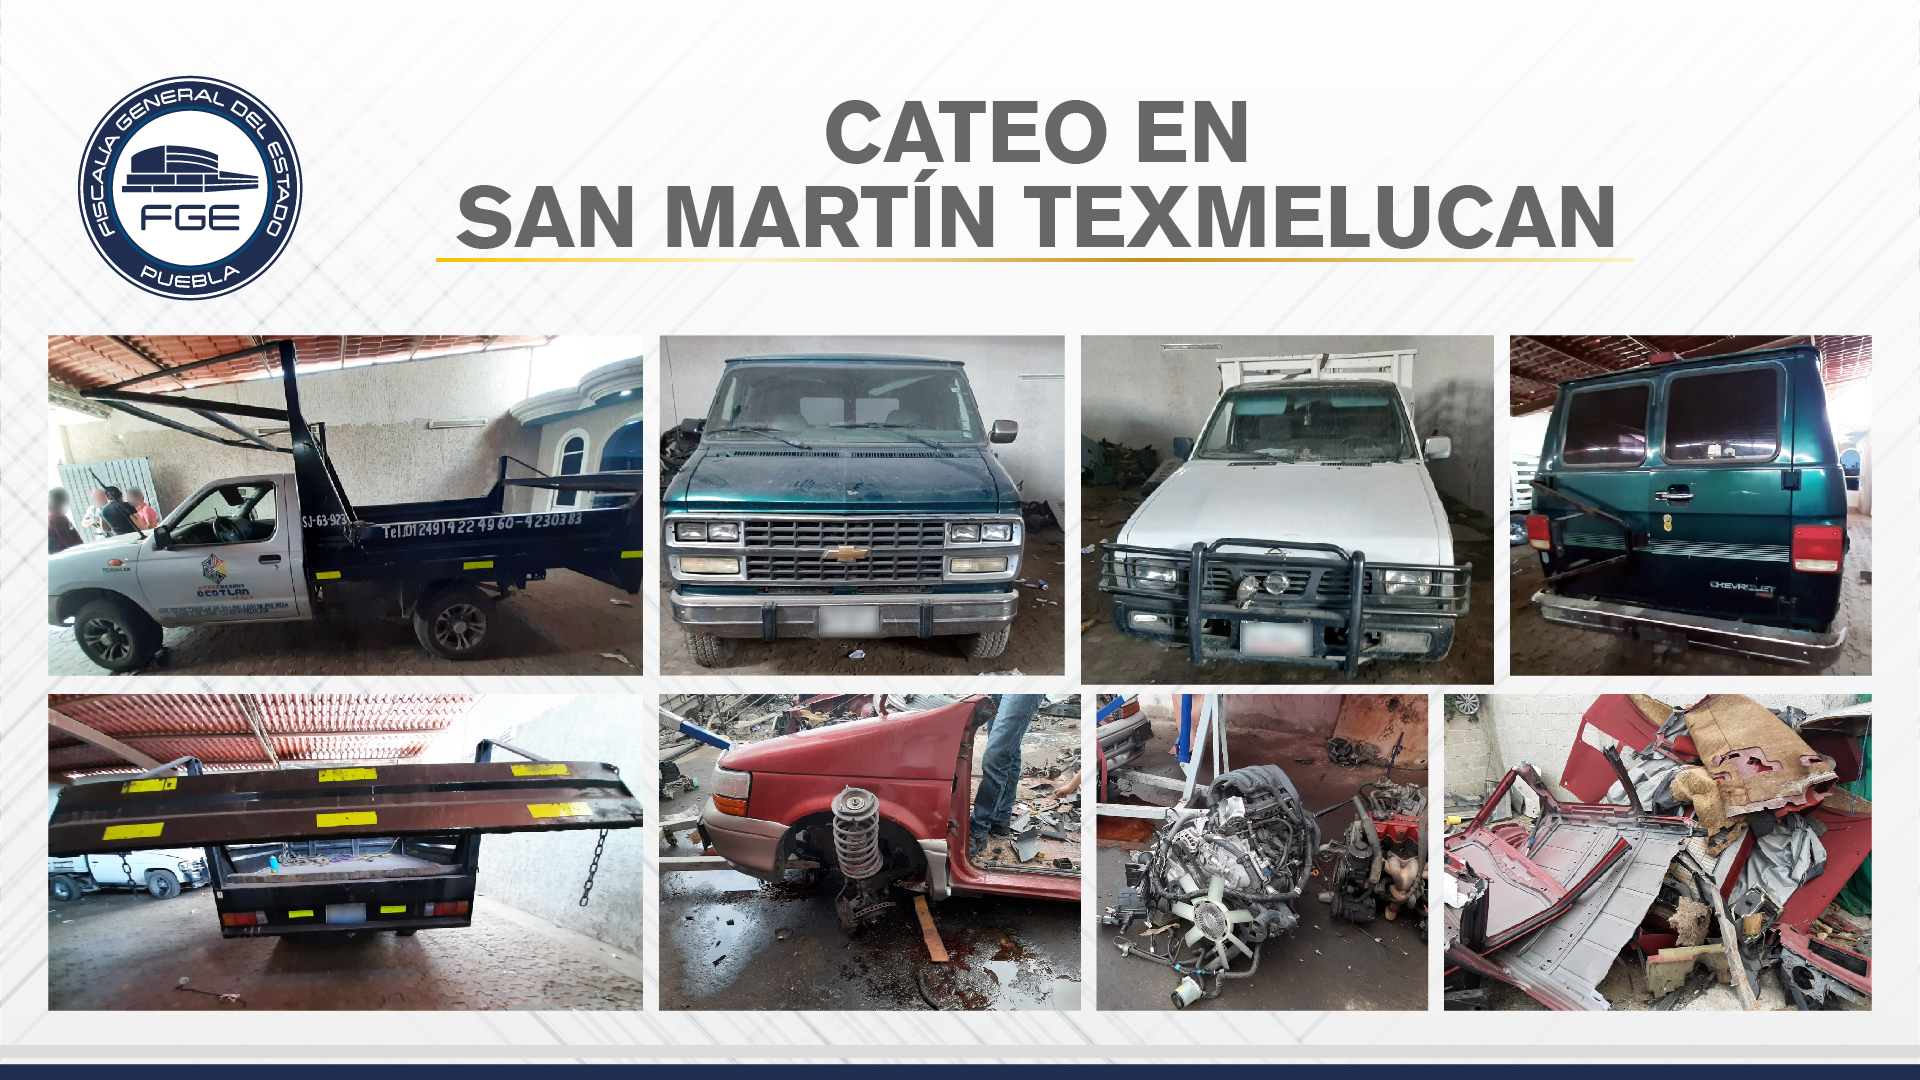 En cateos de San Martín, Fiscalía aseguró vehículos y autopartes